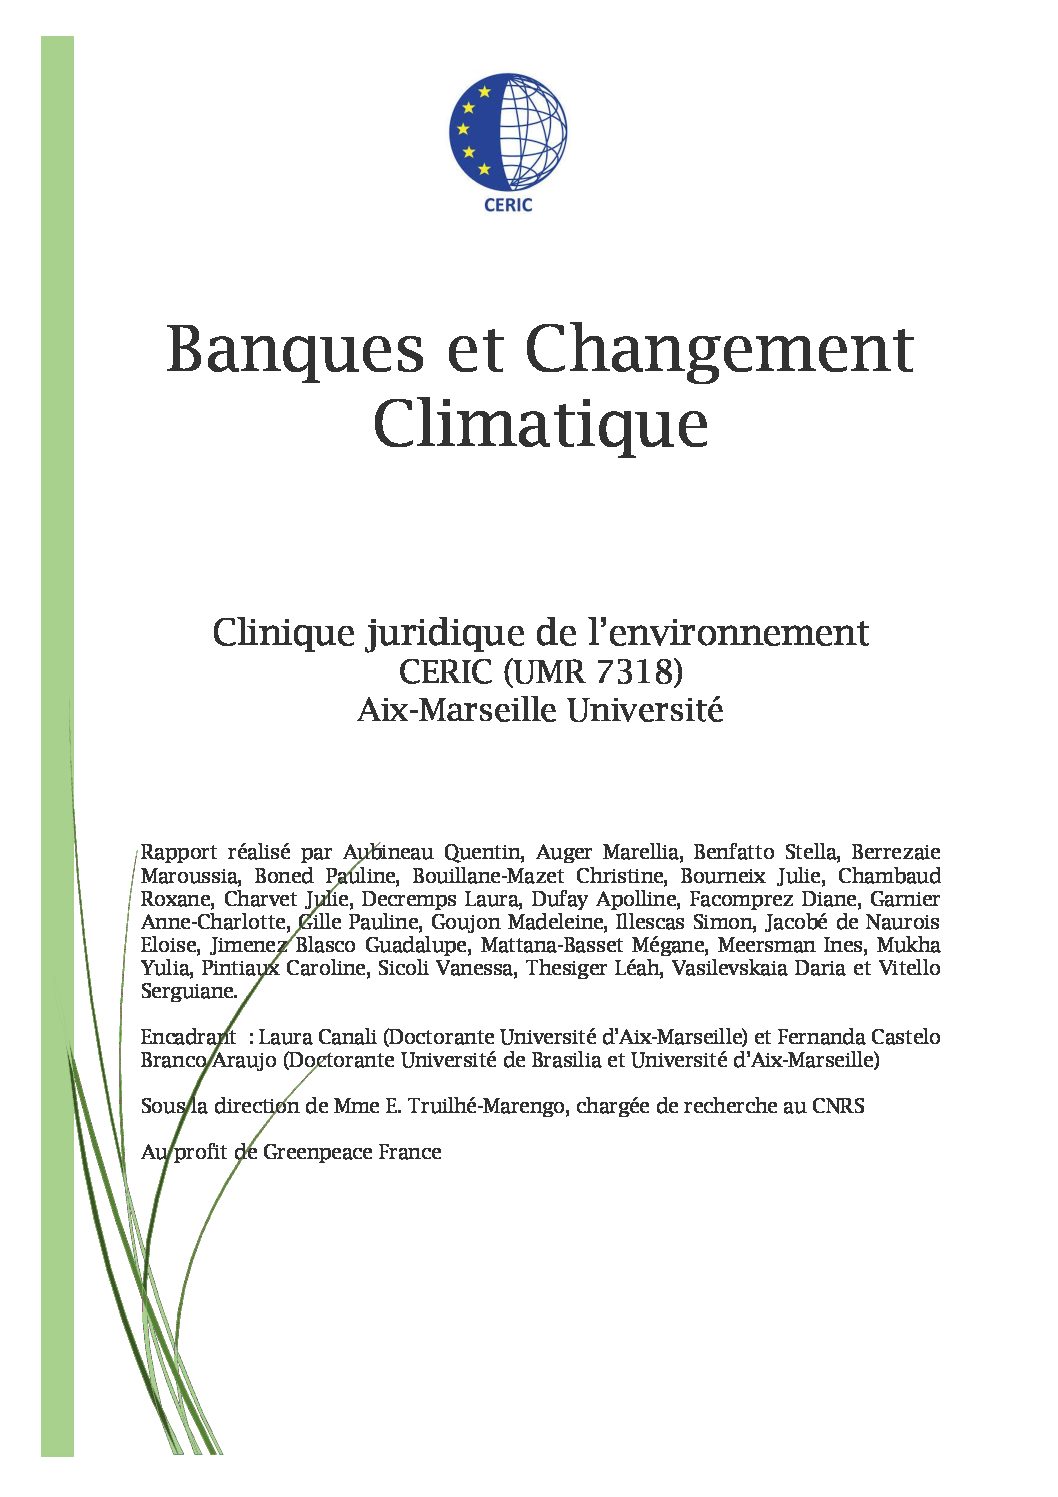 Banques et changement climatique